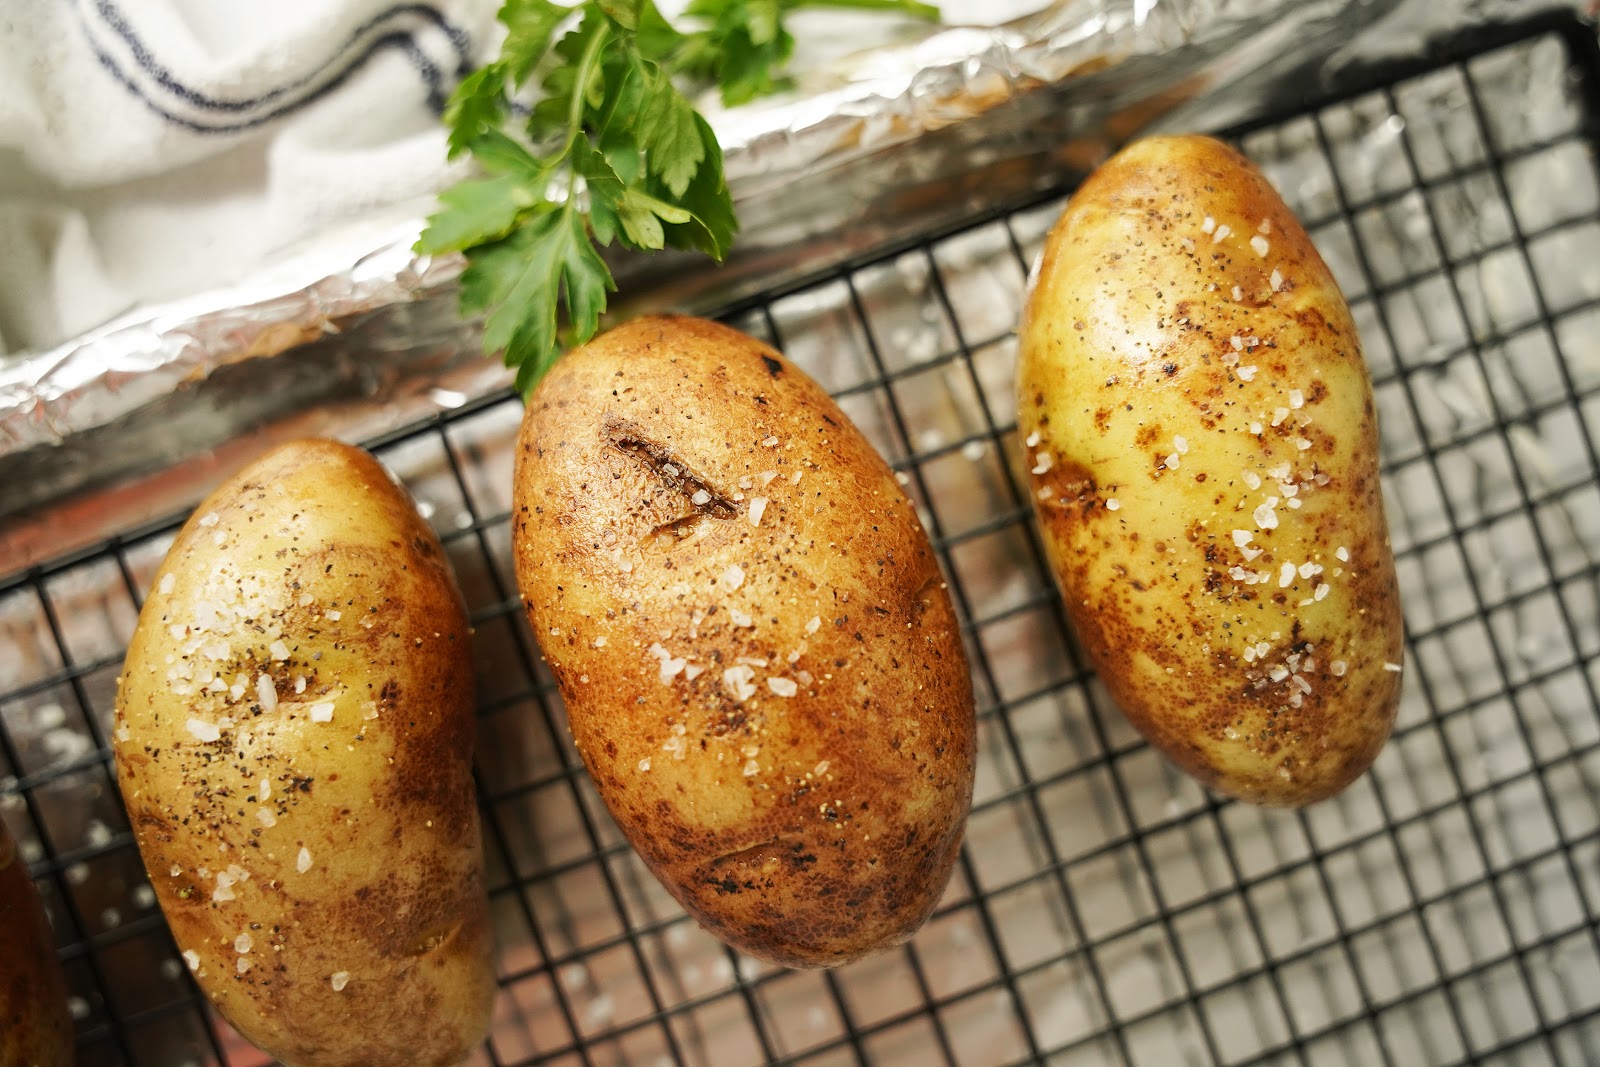 Bake potatoes at 400℉ for 45 minutes.